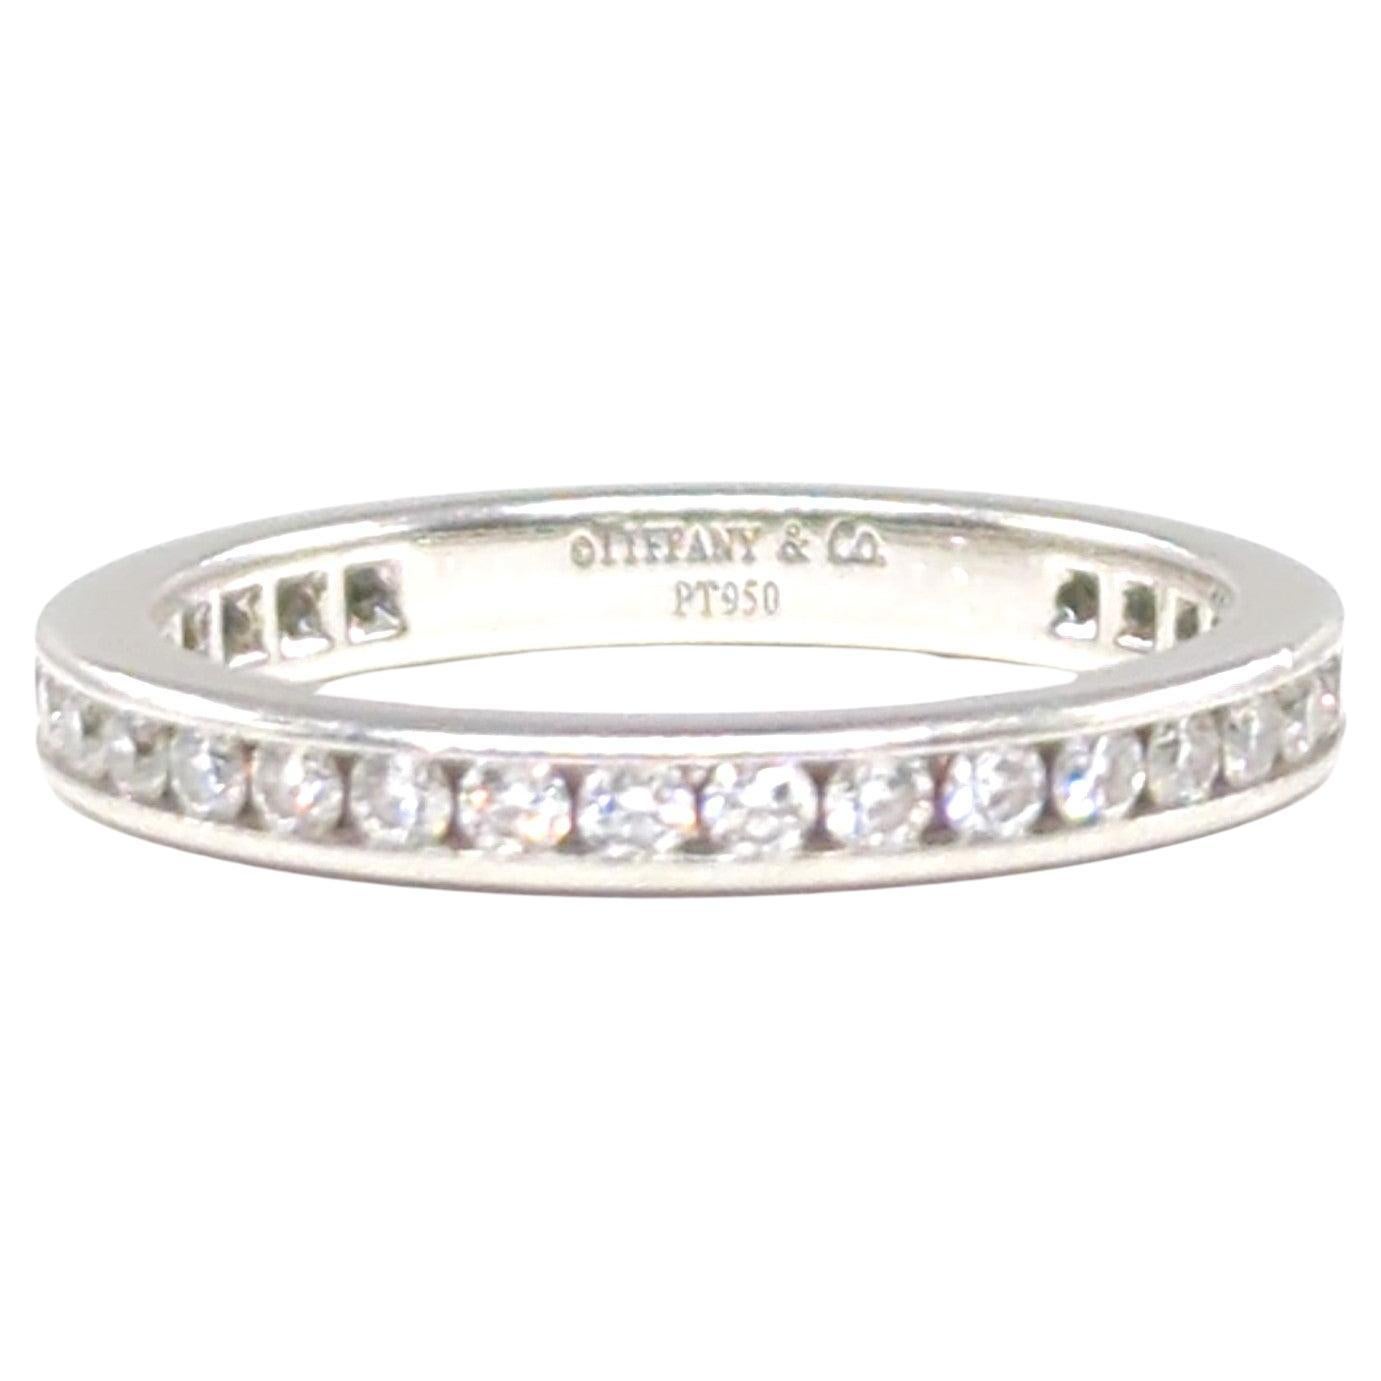 Tiffany & Co. Iconic Diamond Full Circle Eternity Band Ring 0.73 CTW Size 5.5 3